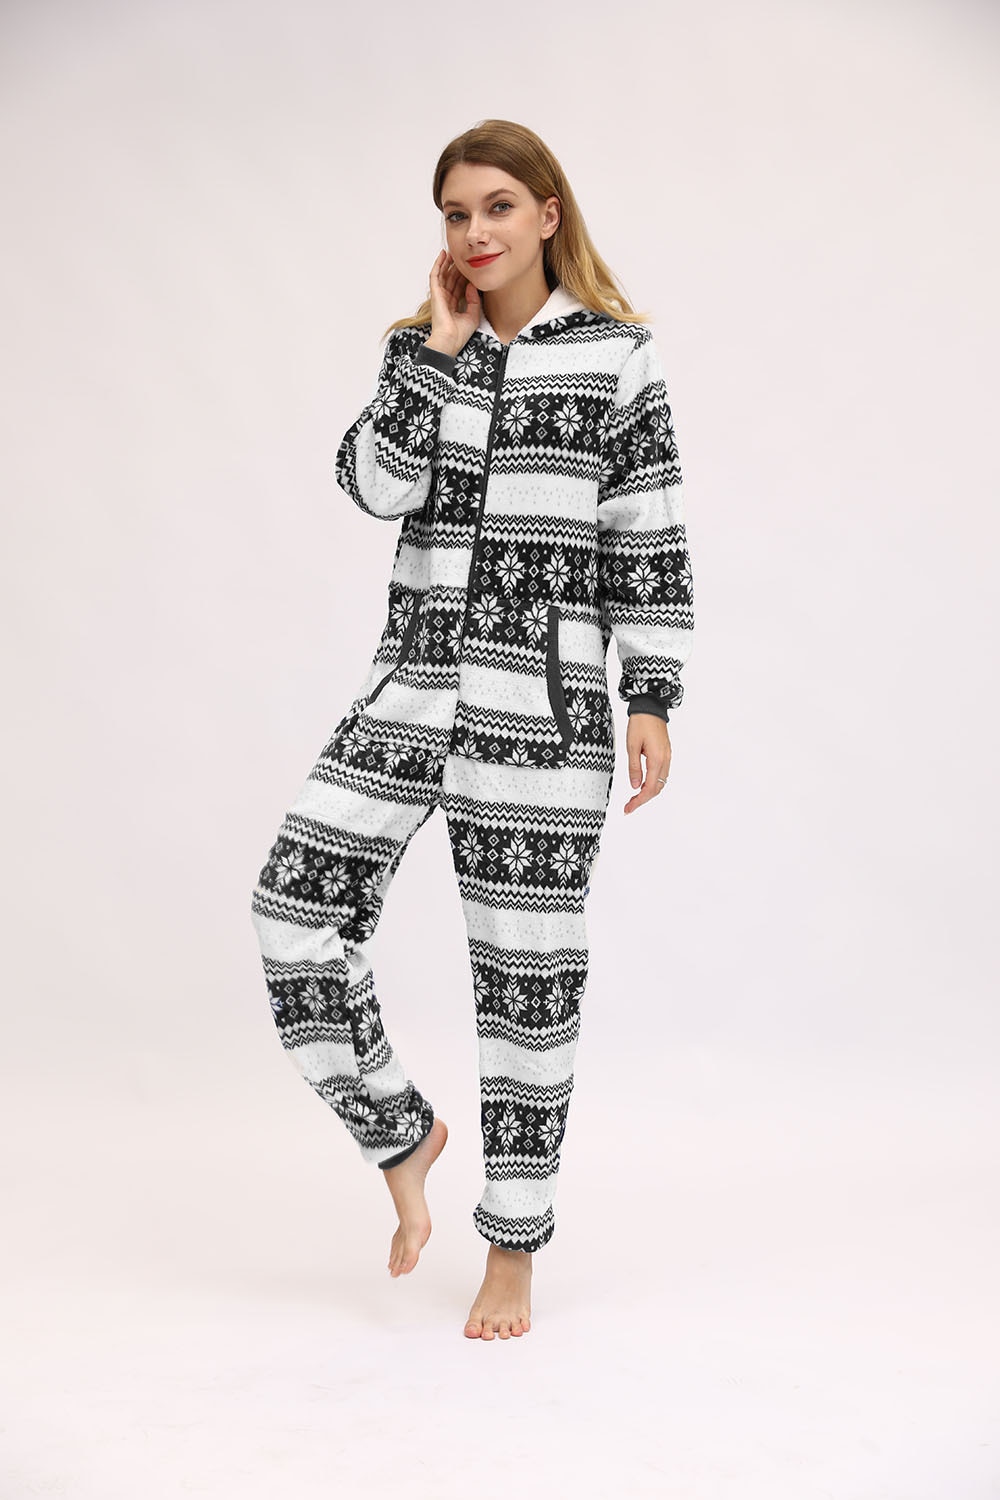 Christmas Hooded Onesie Adult Woman Elk Snow Print Party Jumpsuit Wide Stripes Zipper Hood Pajamas Female Winter Warm Pyjamas